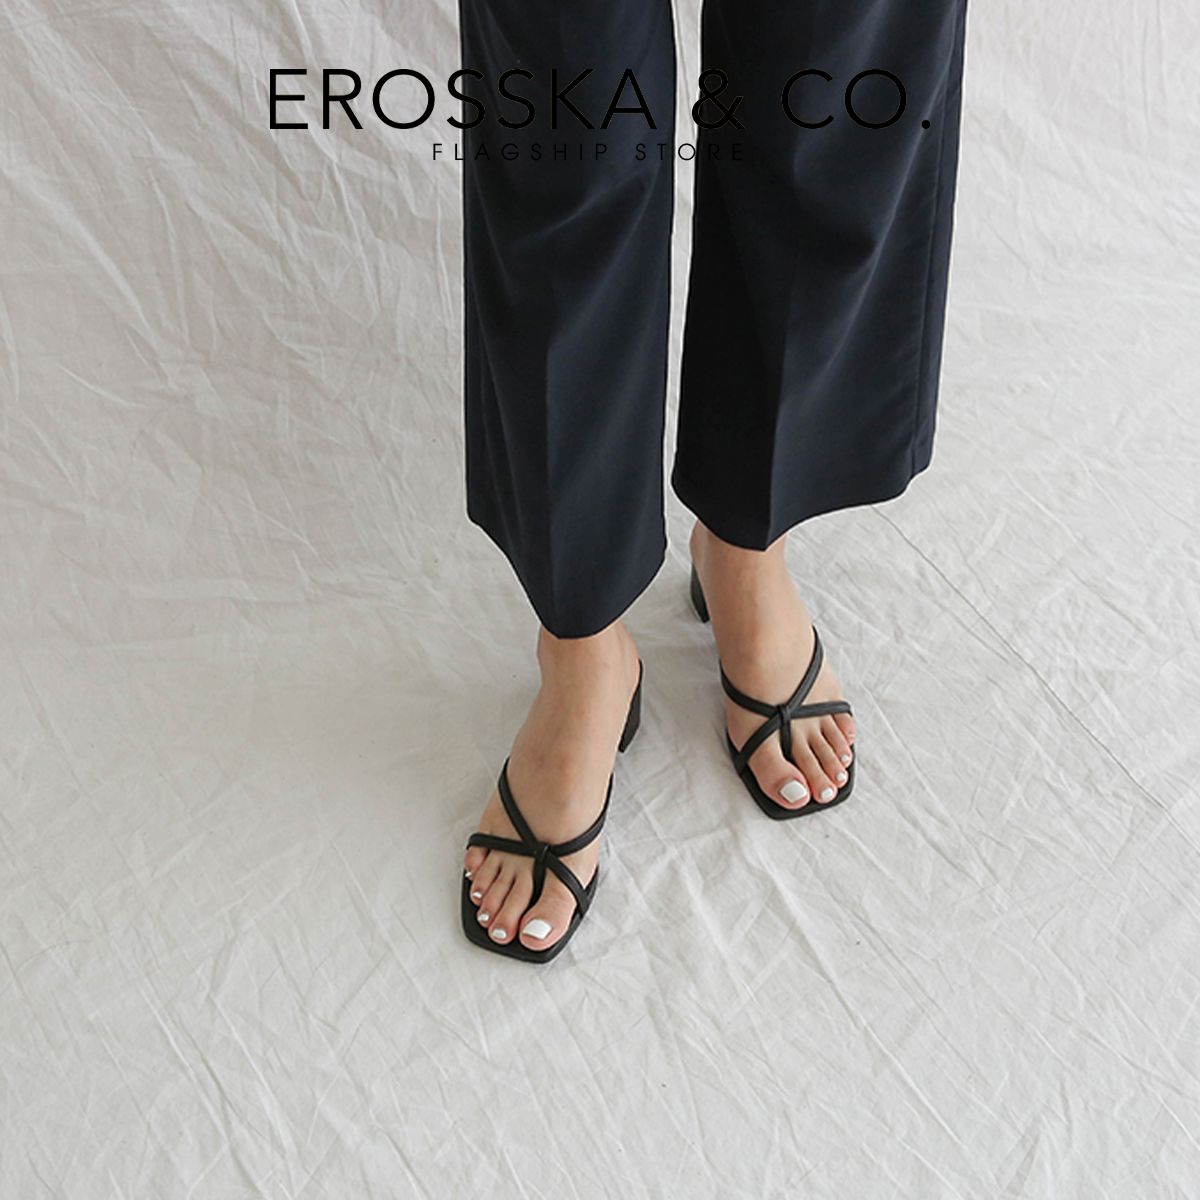 Dép cao gót Erosska xỏ ngón phối dây kiểu dáng Hàn Quốc cao 5cm EM075